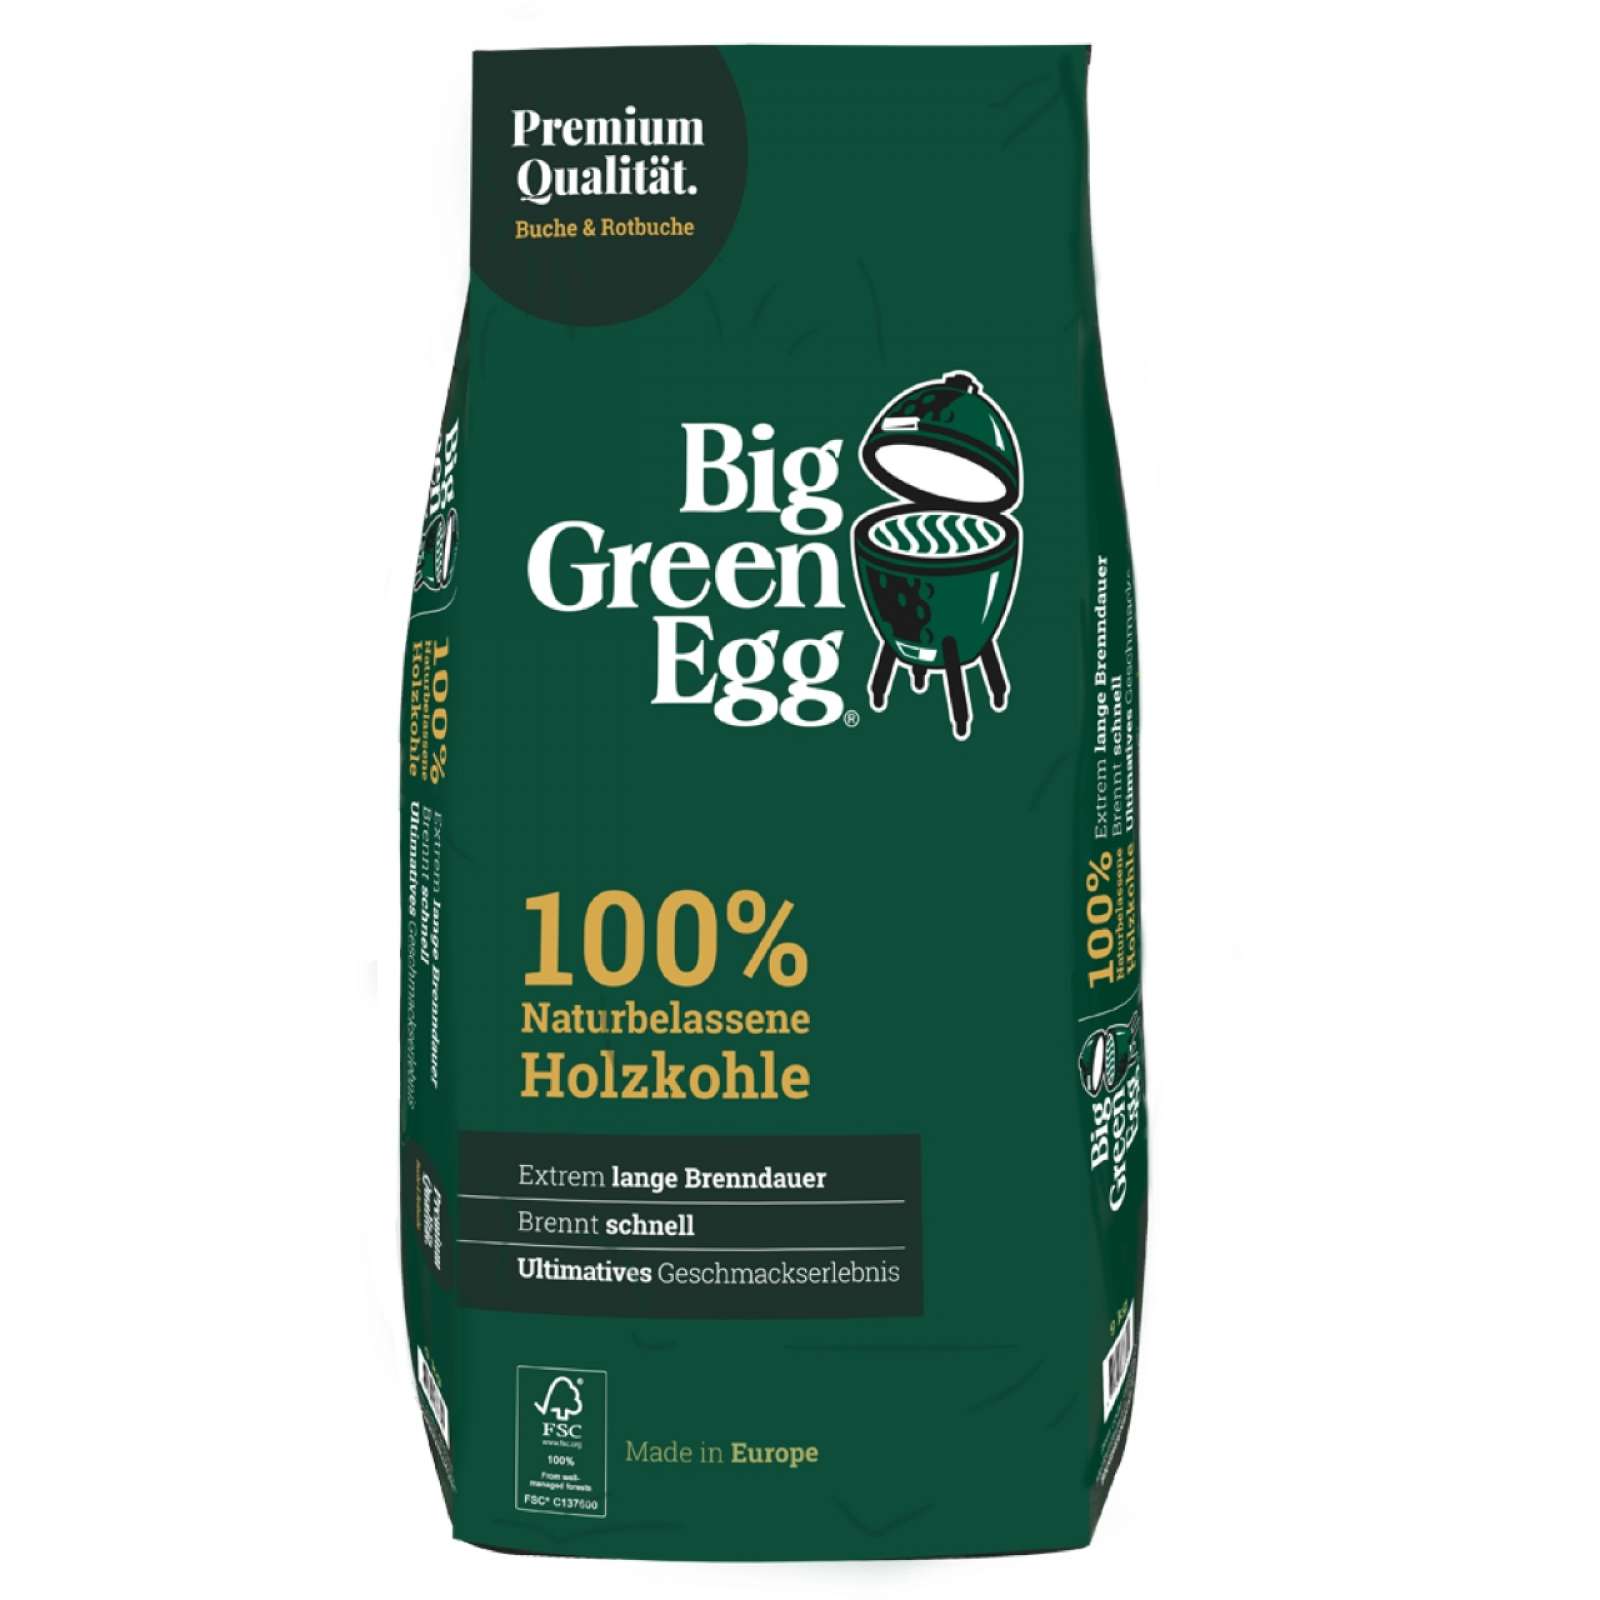 Big Green Egg 100% naturbelassene Premium Buchenholzkohle 9 kg 666304